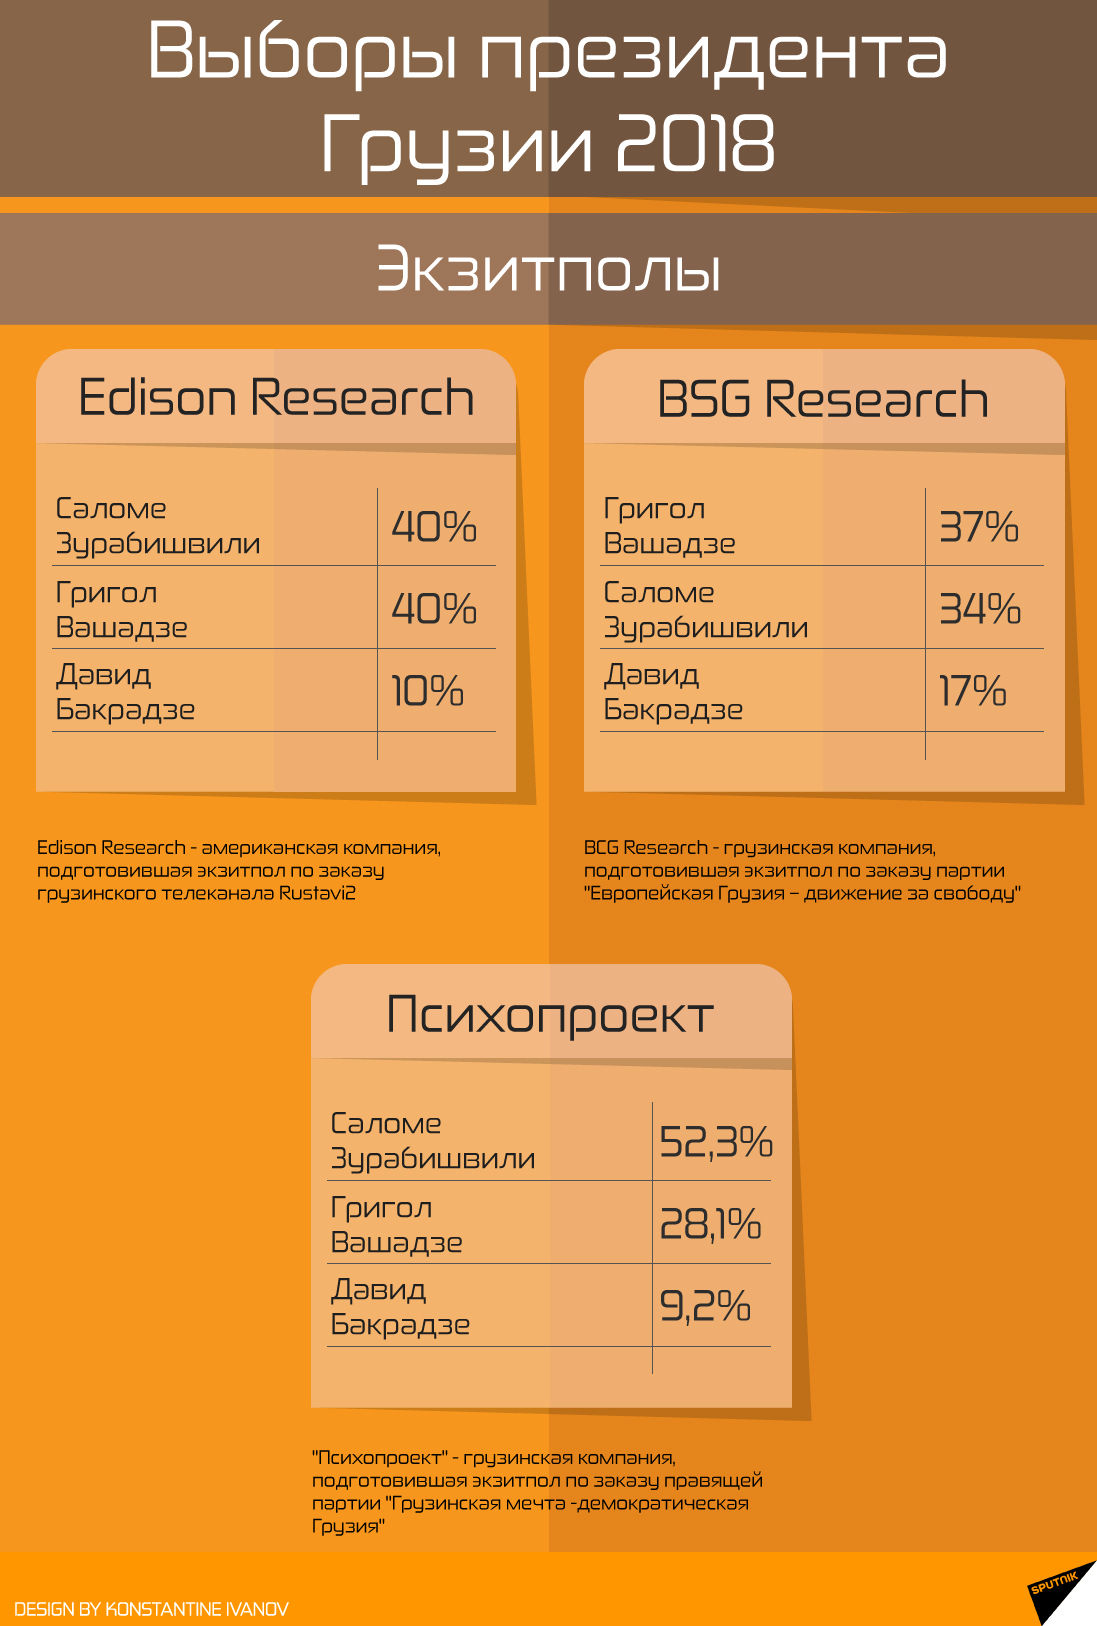 Экзитполы компаний Edison Researc, BCG Research  и Психопроект  - Sputnik Грузия